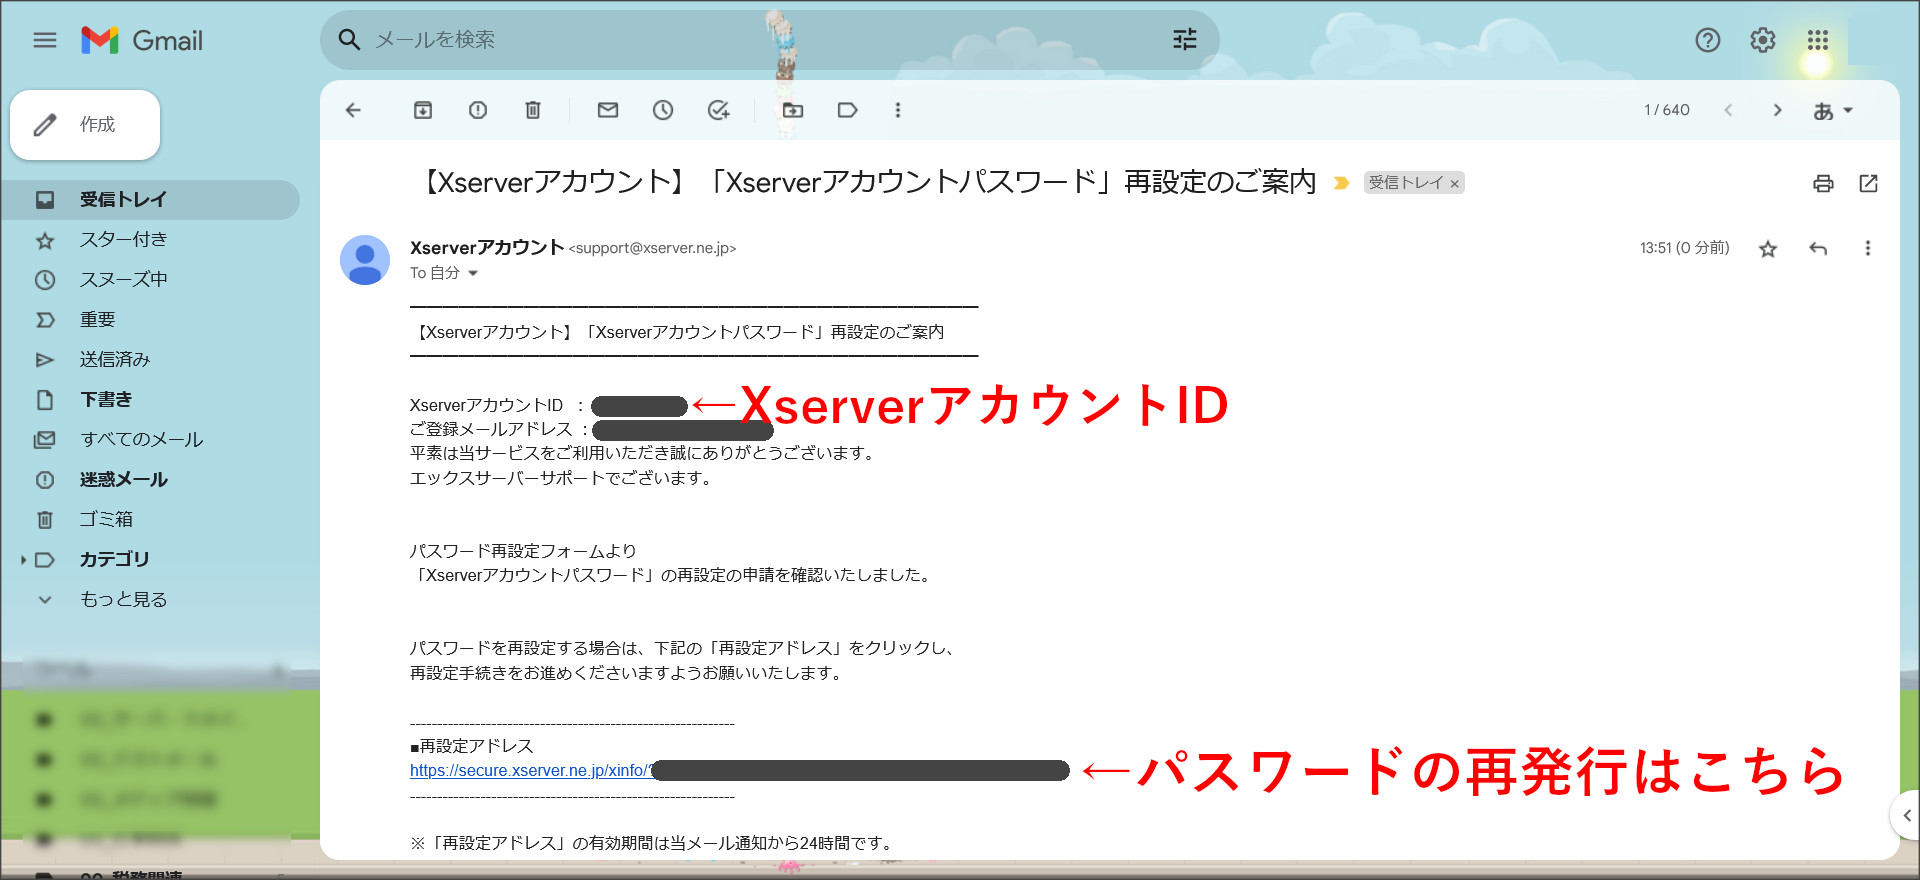 「Xserverアカウントパスワード」再設定の案内メール